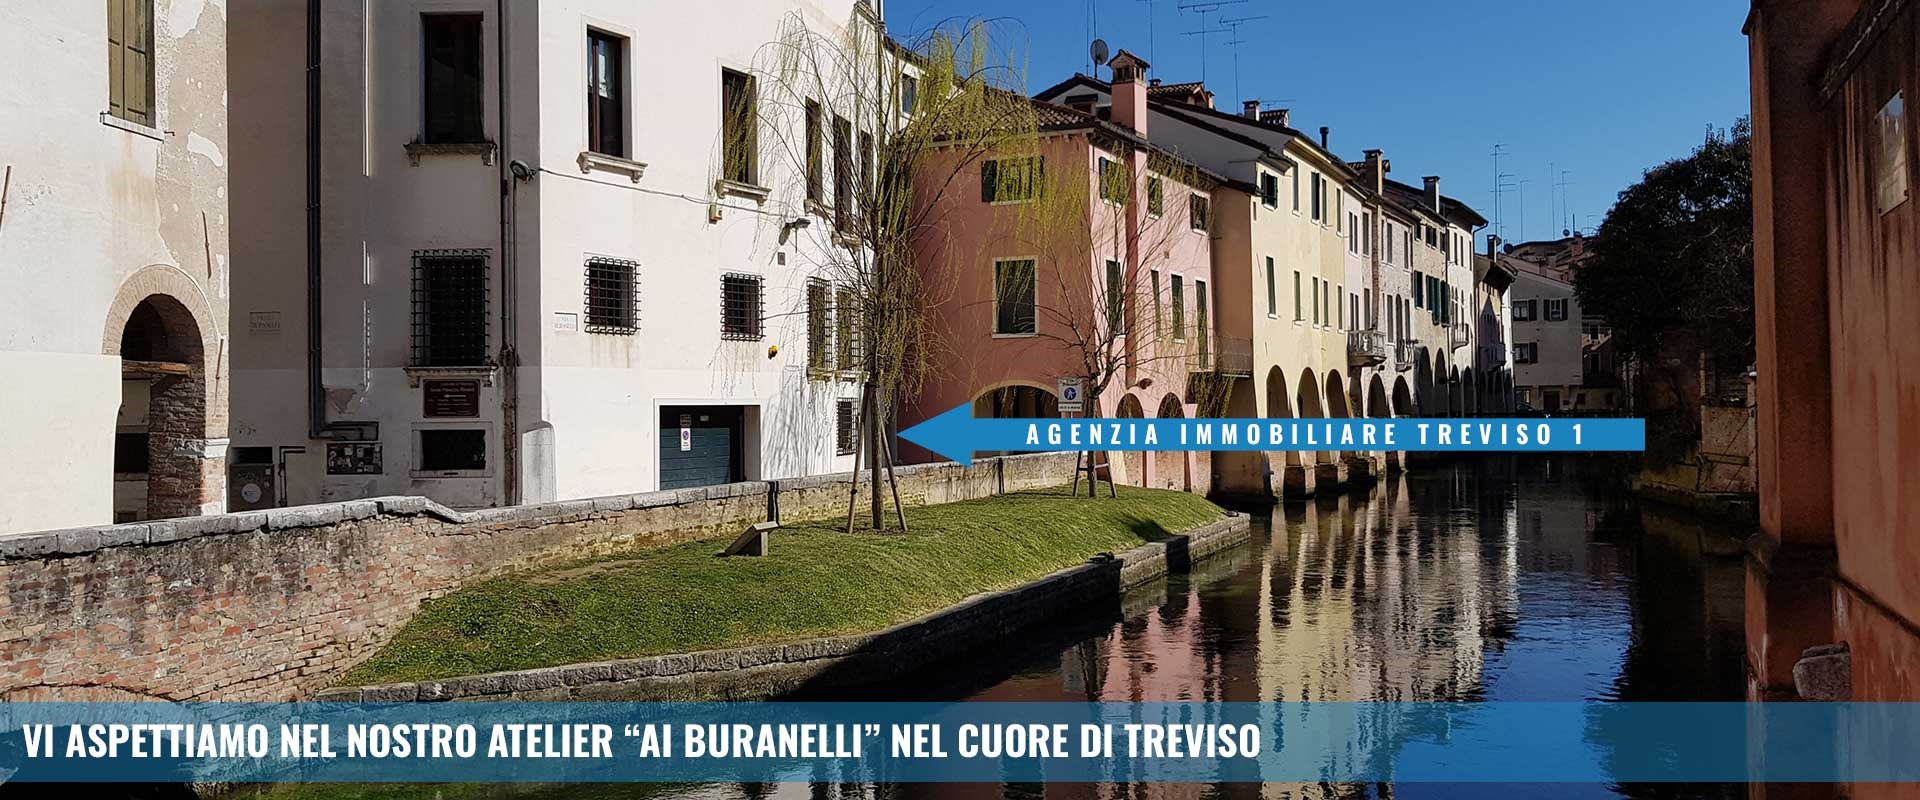 2464, Negozi centro storico di Treviso